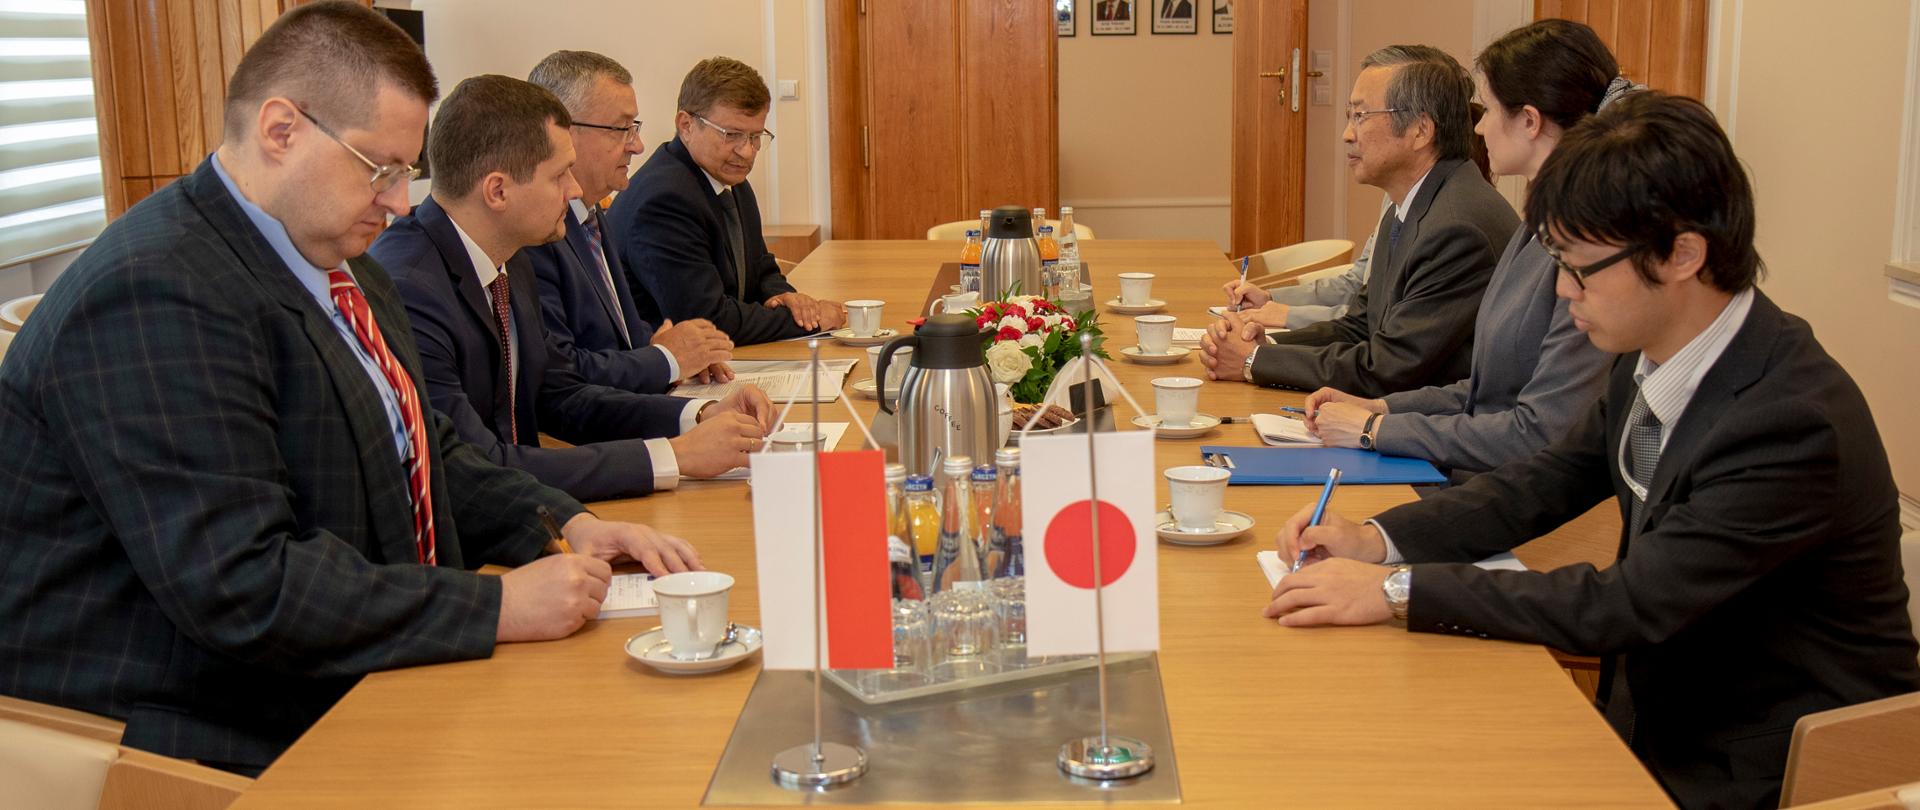 Minister Andrzej Adamczyk i ambasador Japonii Tsukasa Kawada rozmawiają o współpracy